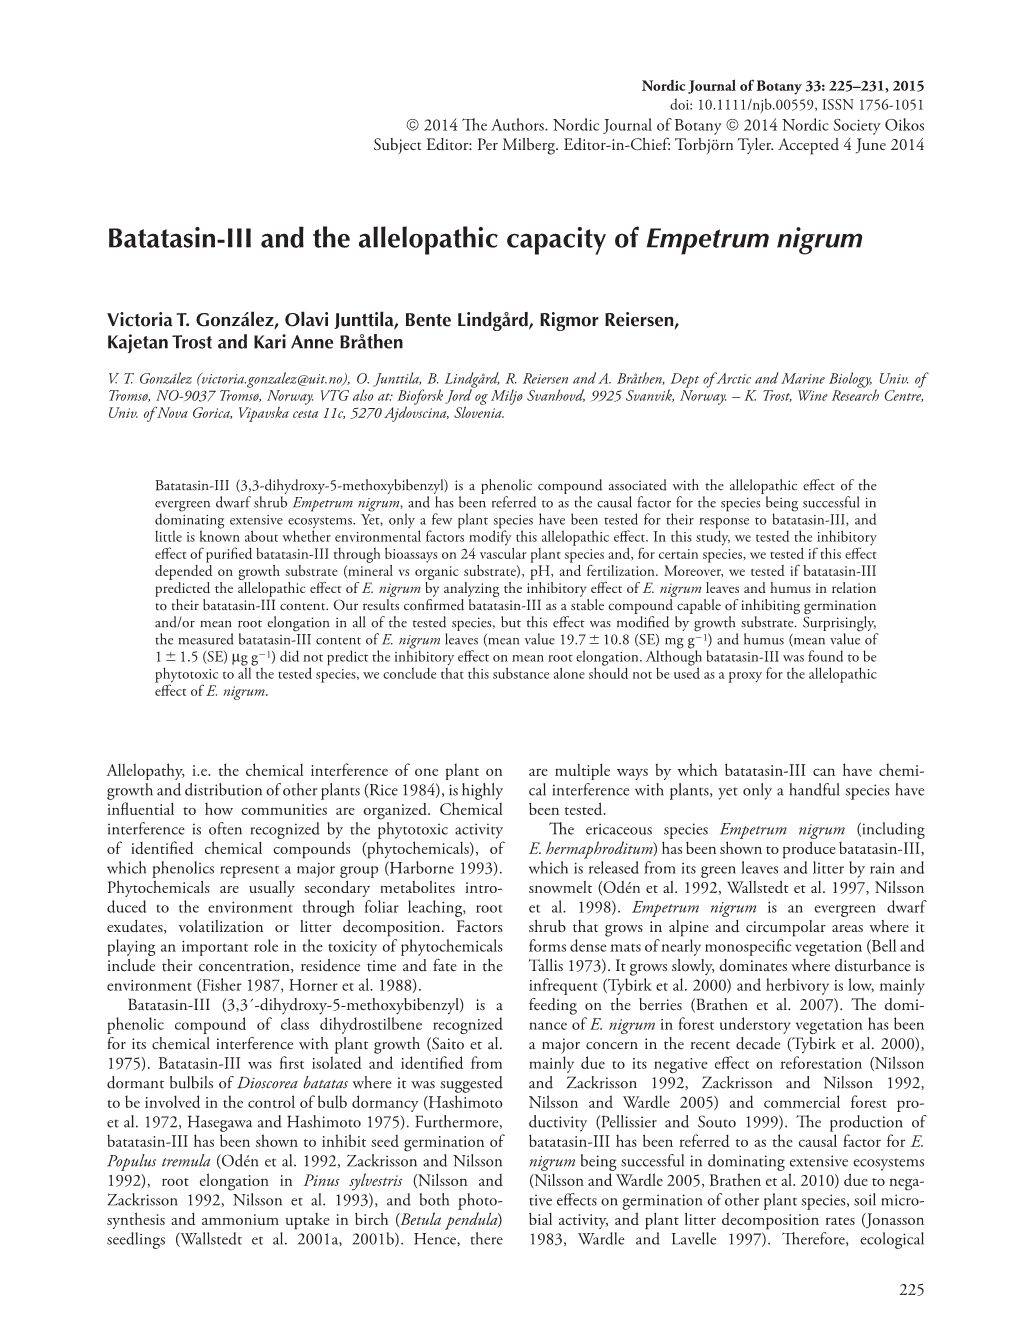 Batatasin-III and the Allelopathic Capacity of Empetrum Nigrum